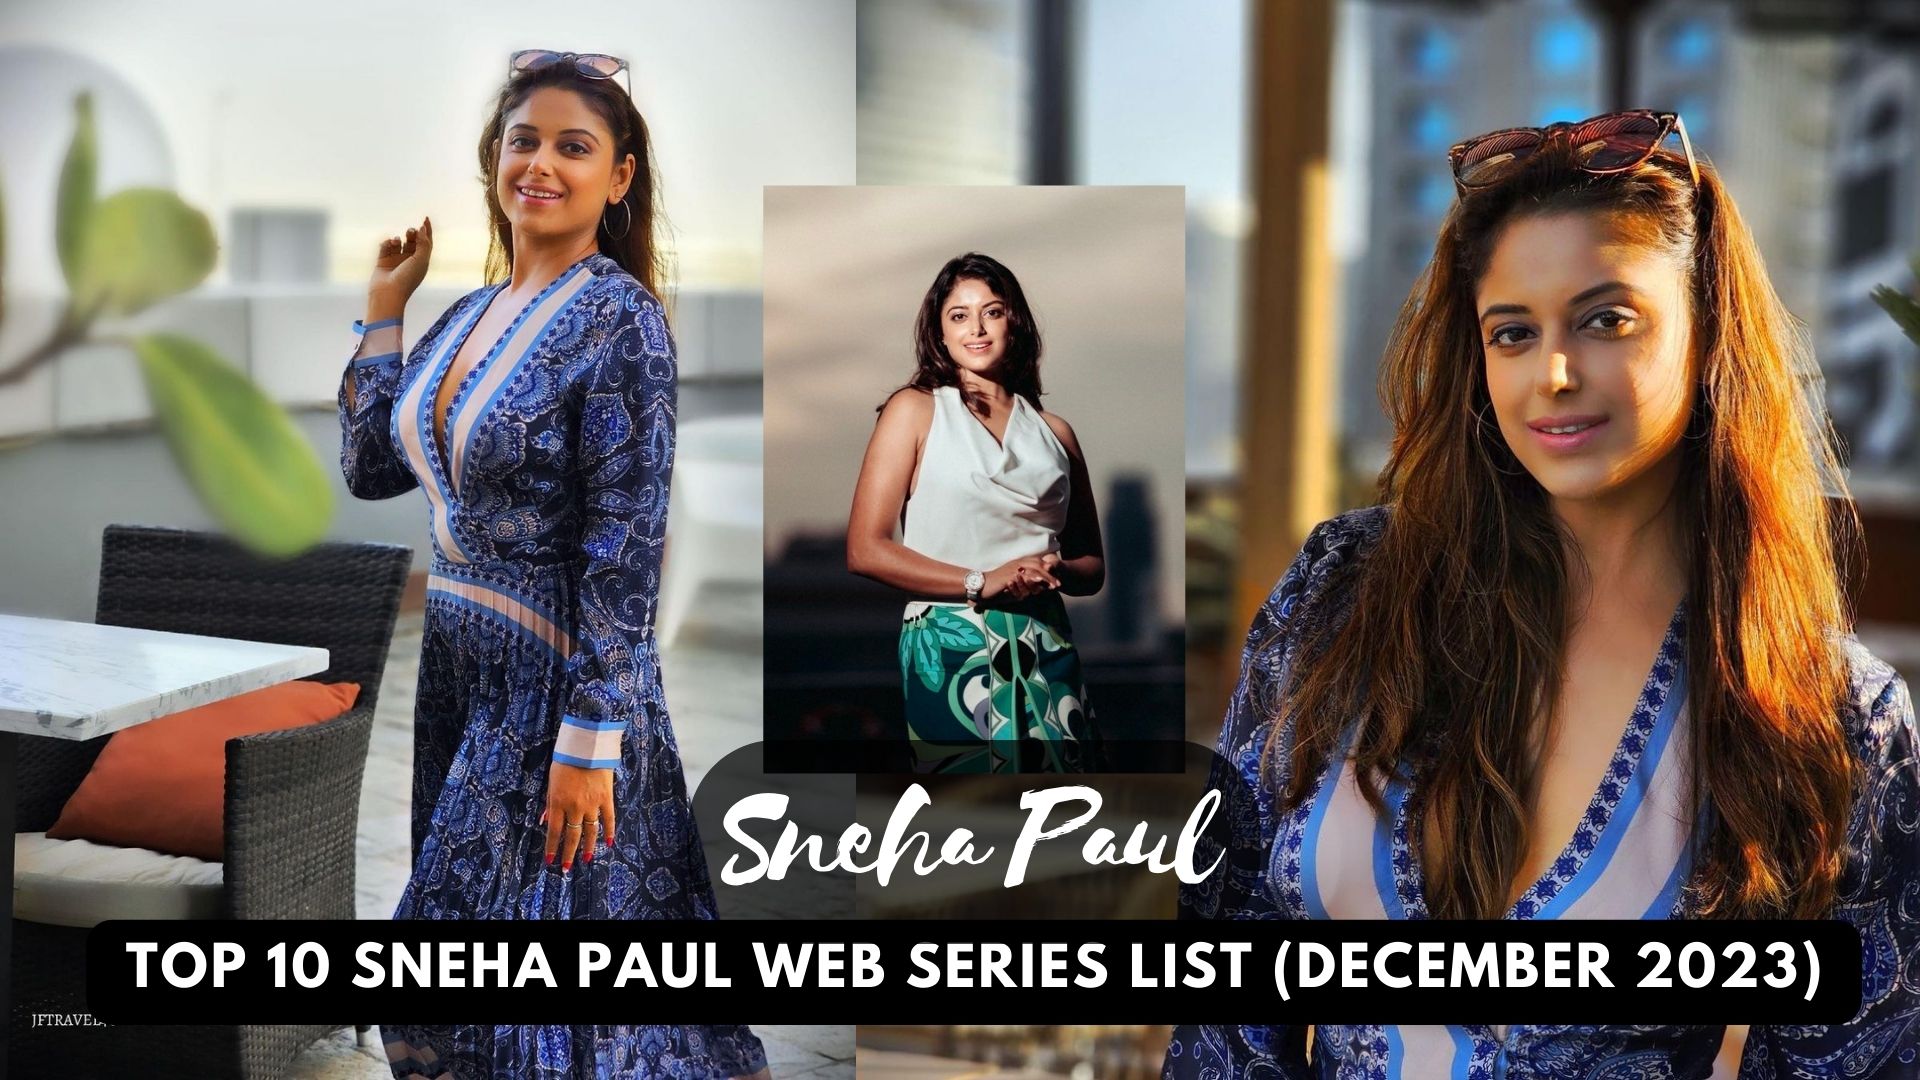 Top 10 Sneha Paul Web Series List (December 2023)